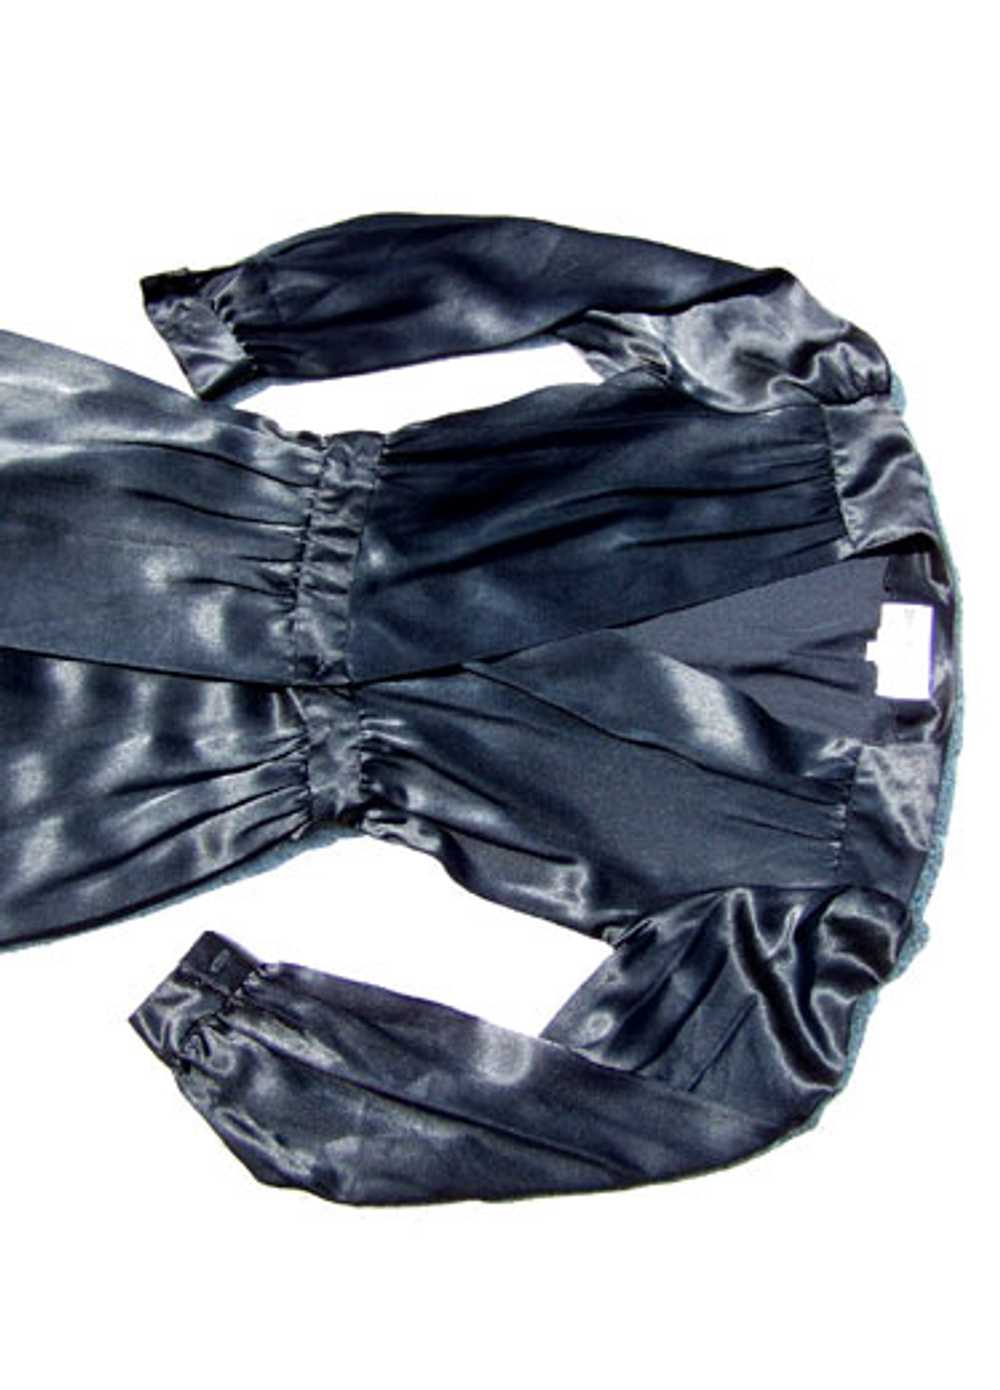 Pierre Cardin wrap dress - image 4